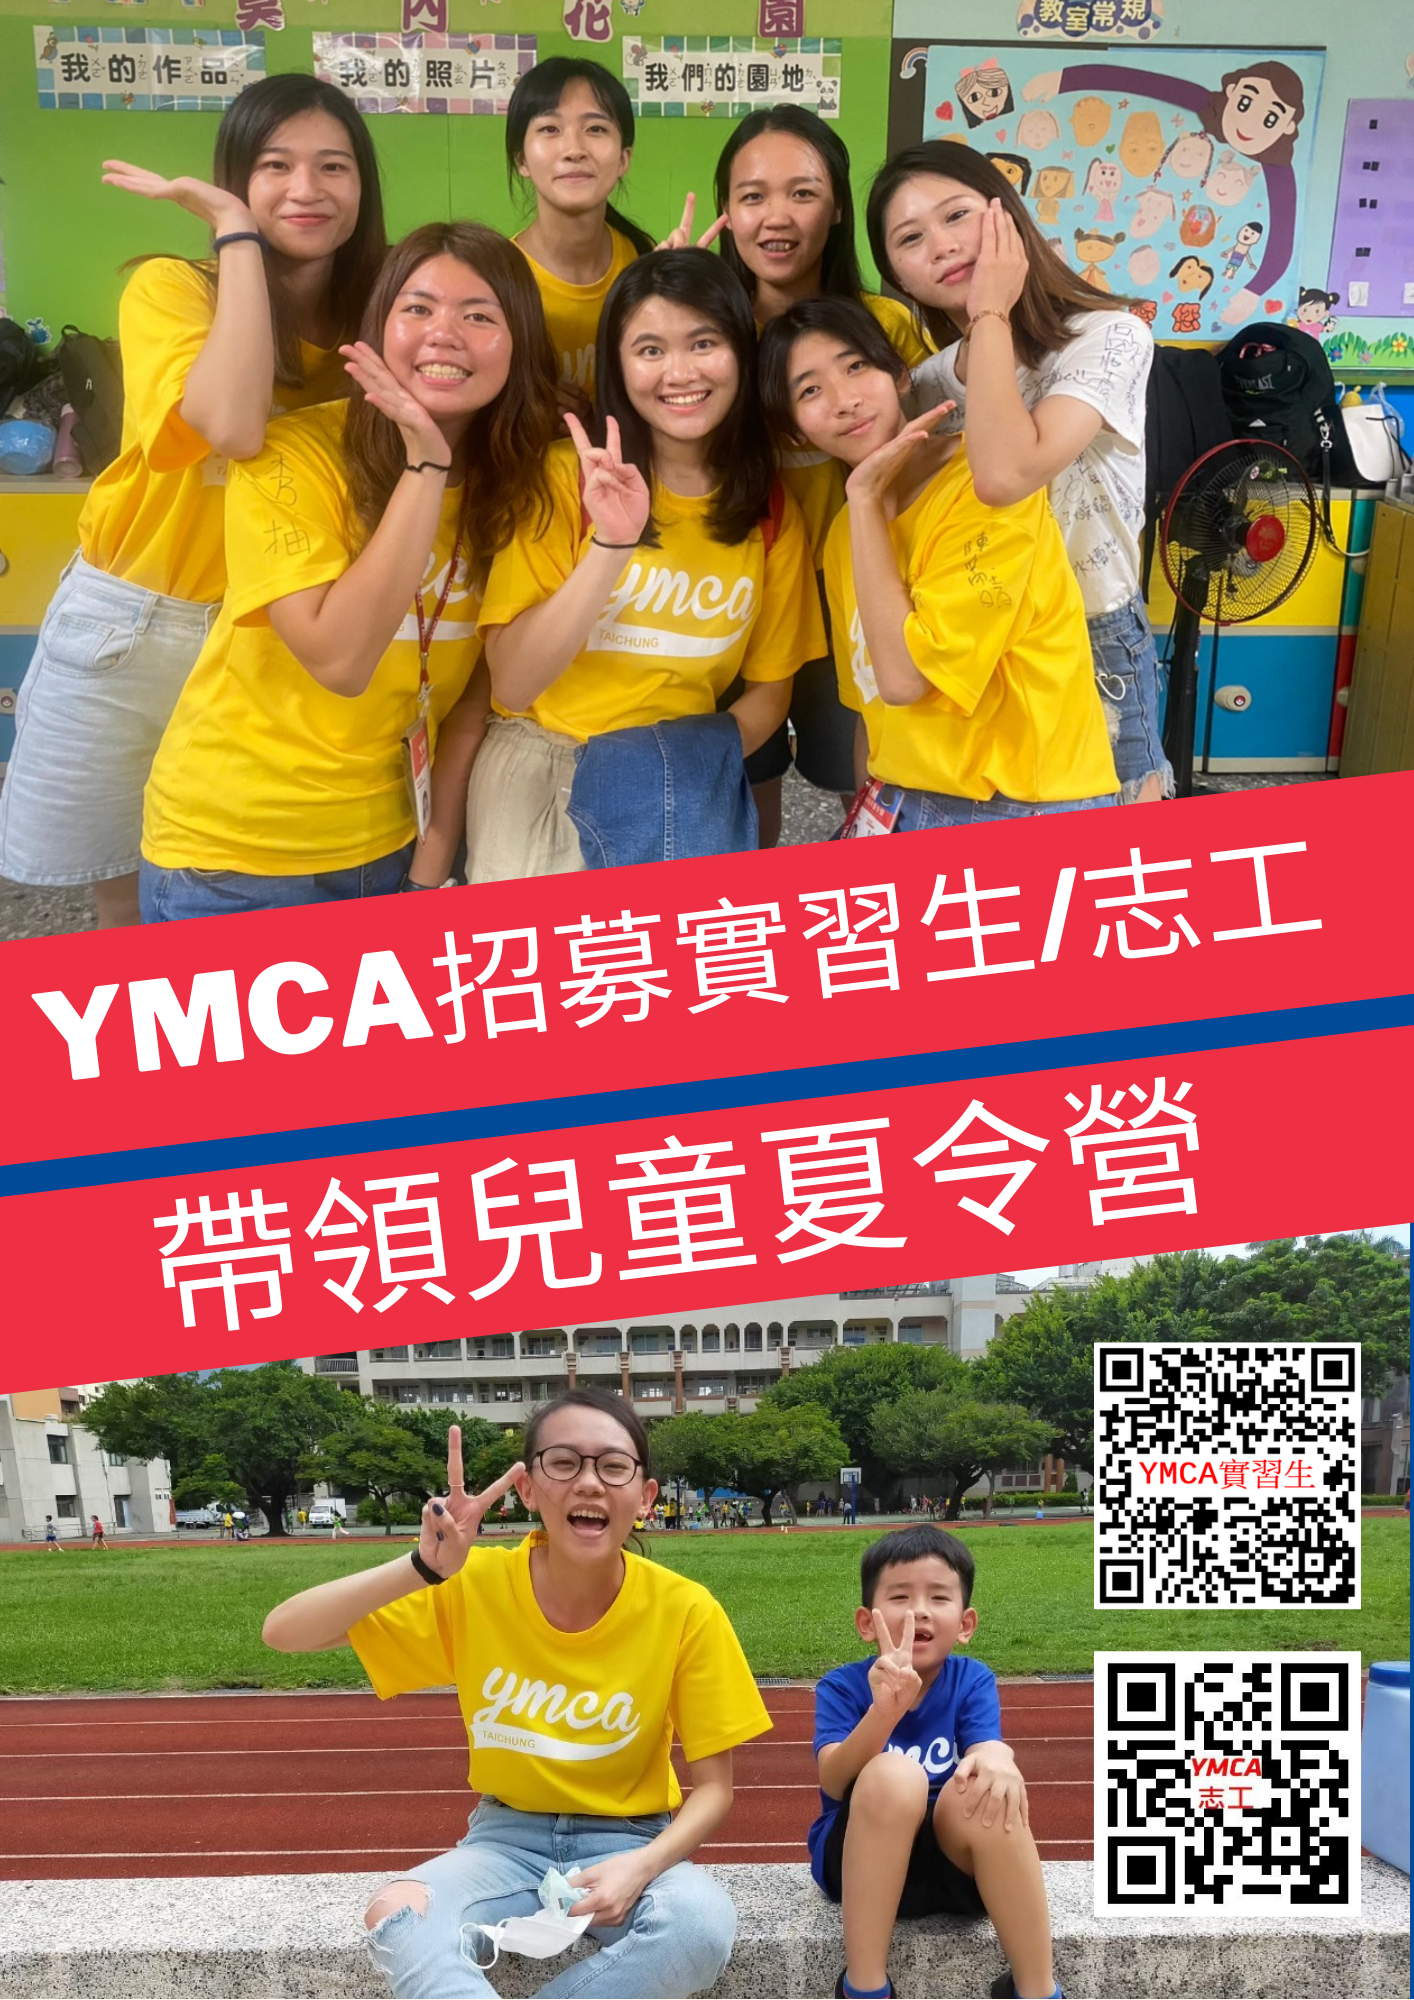 台中市基督教青年會(台中YMCA) 招募暑假實習生